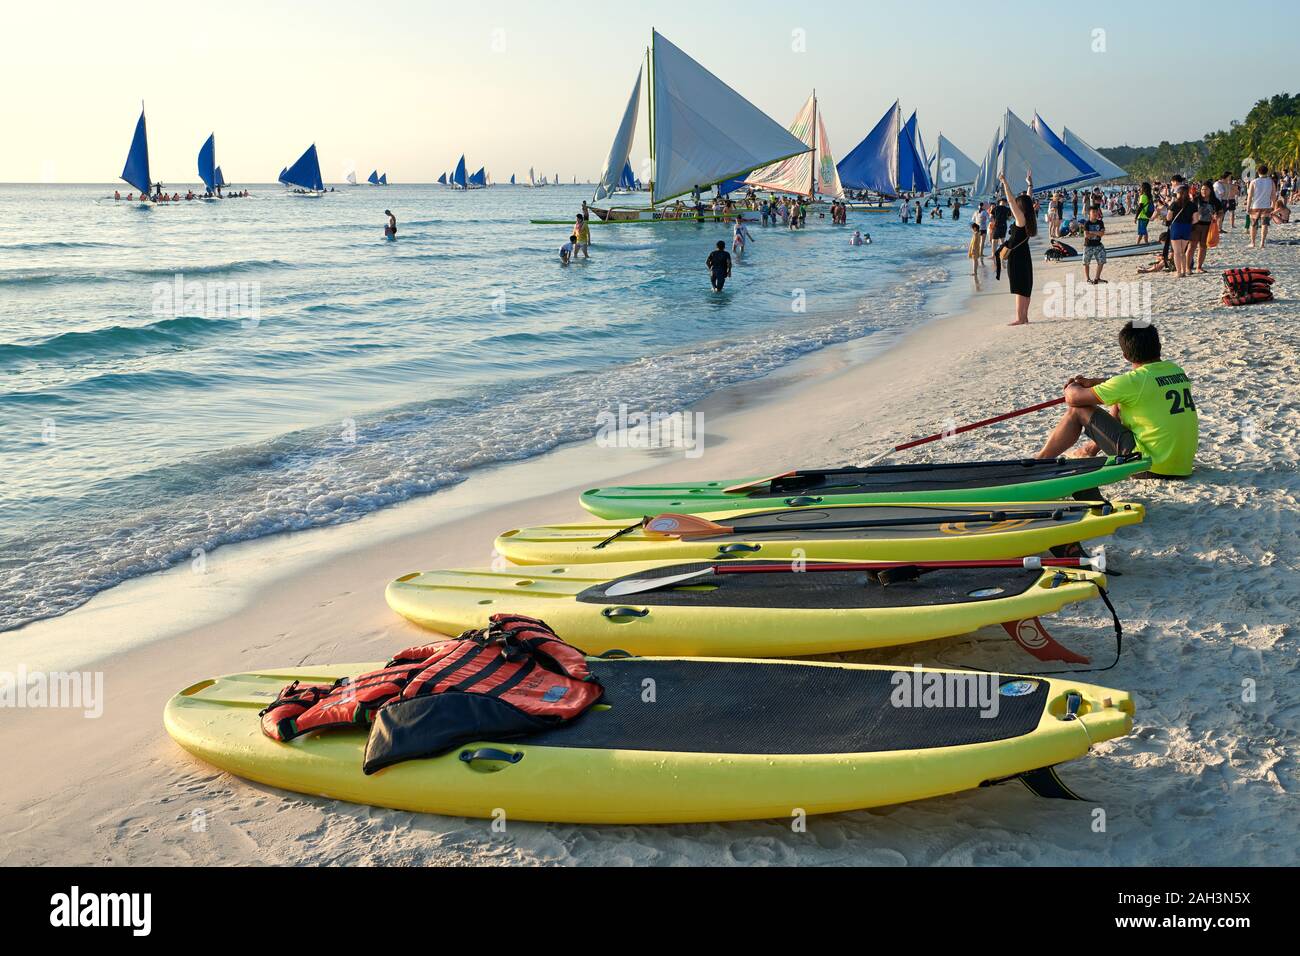 Il Boracay, Aklan Provincia, Filippine - 13 Gennaio 2019: Tramonto alla spiaggia bianca con paddle boards e barche a vela in attesa per i turisti Foto Stock